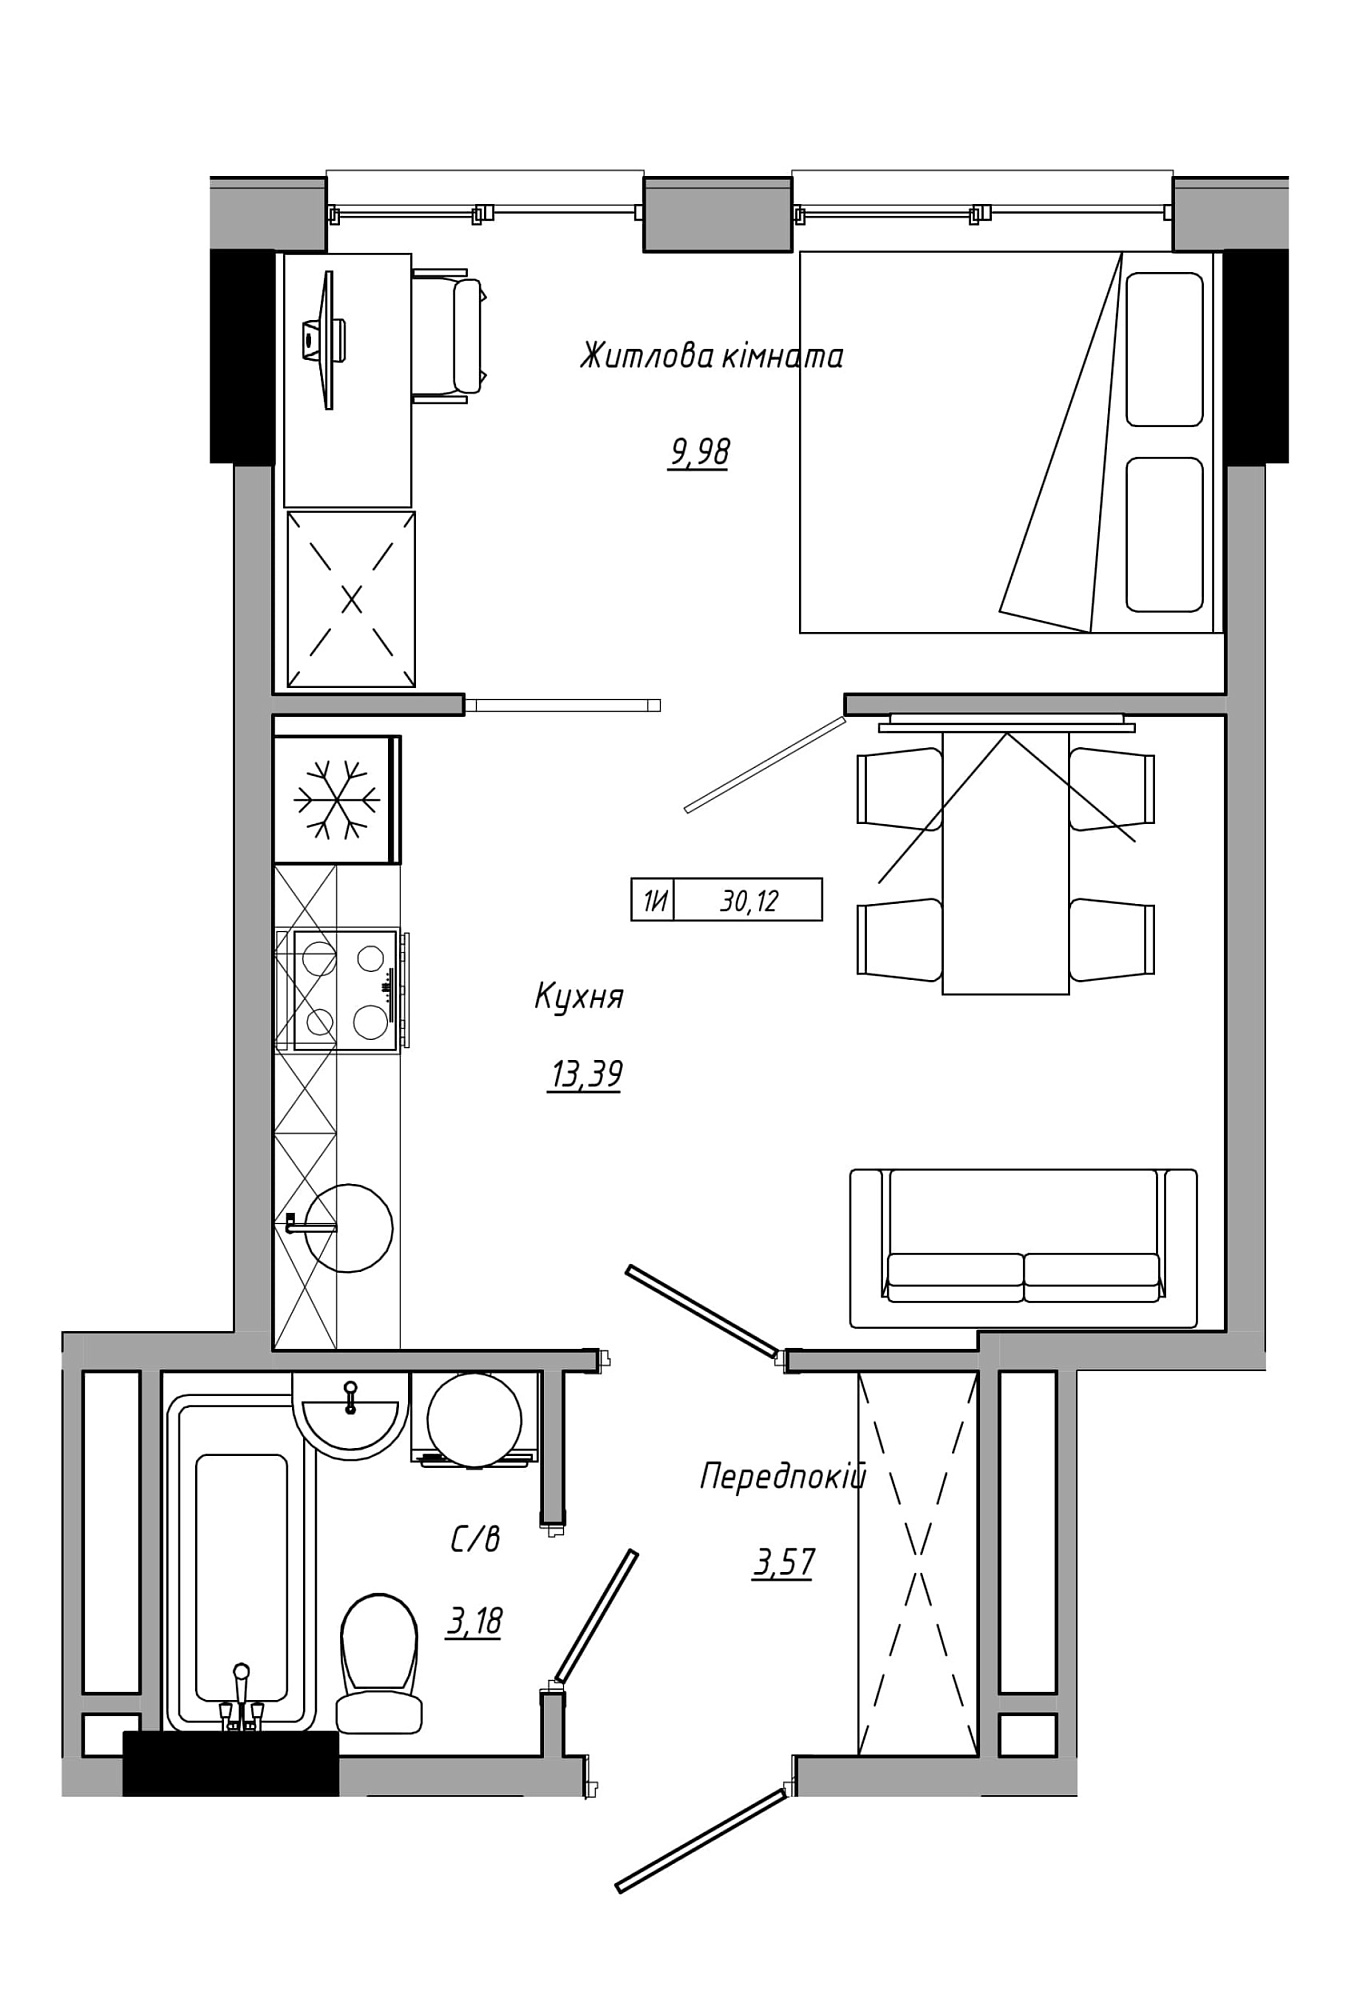 Планировка 1-к квартира площей 30.12м2, AB-21-13/00112.